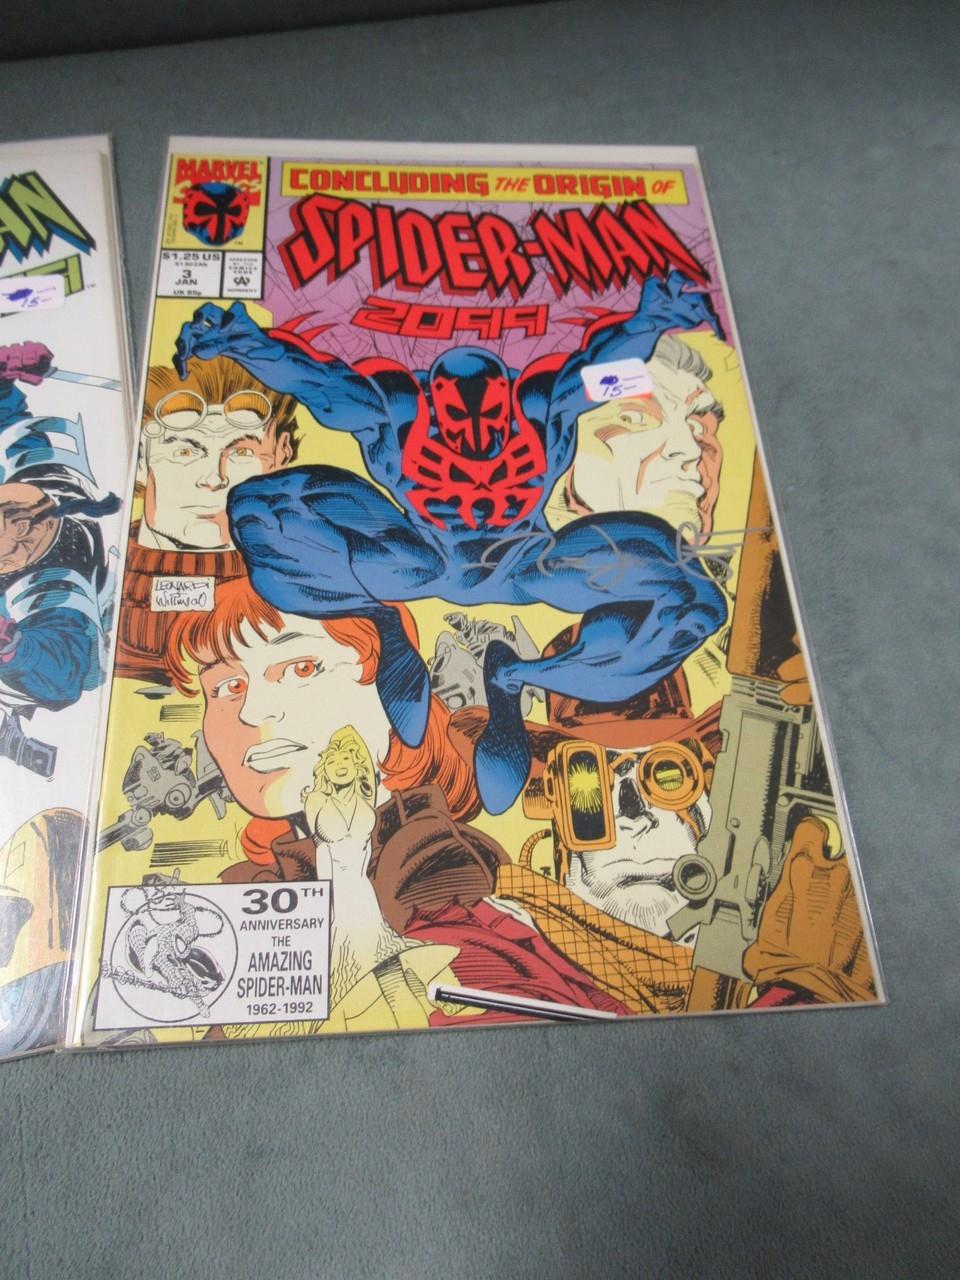 Spider-Man 2099 #1-5 Signed